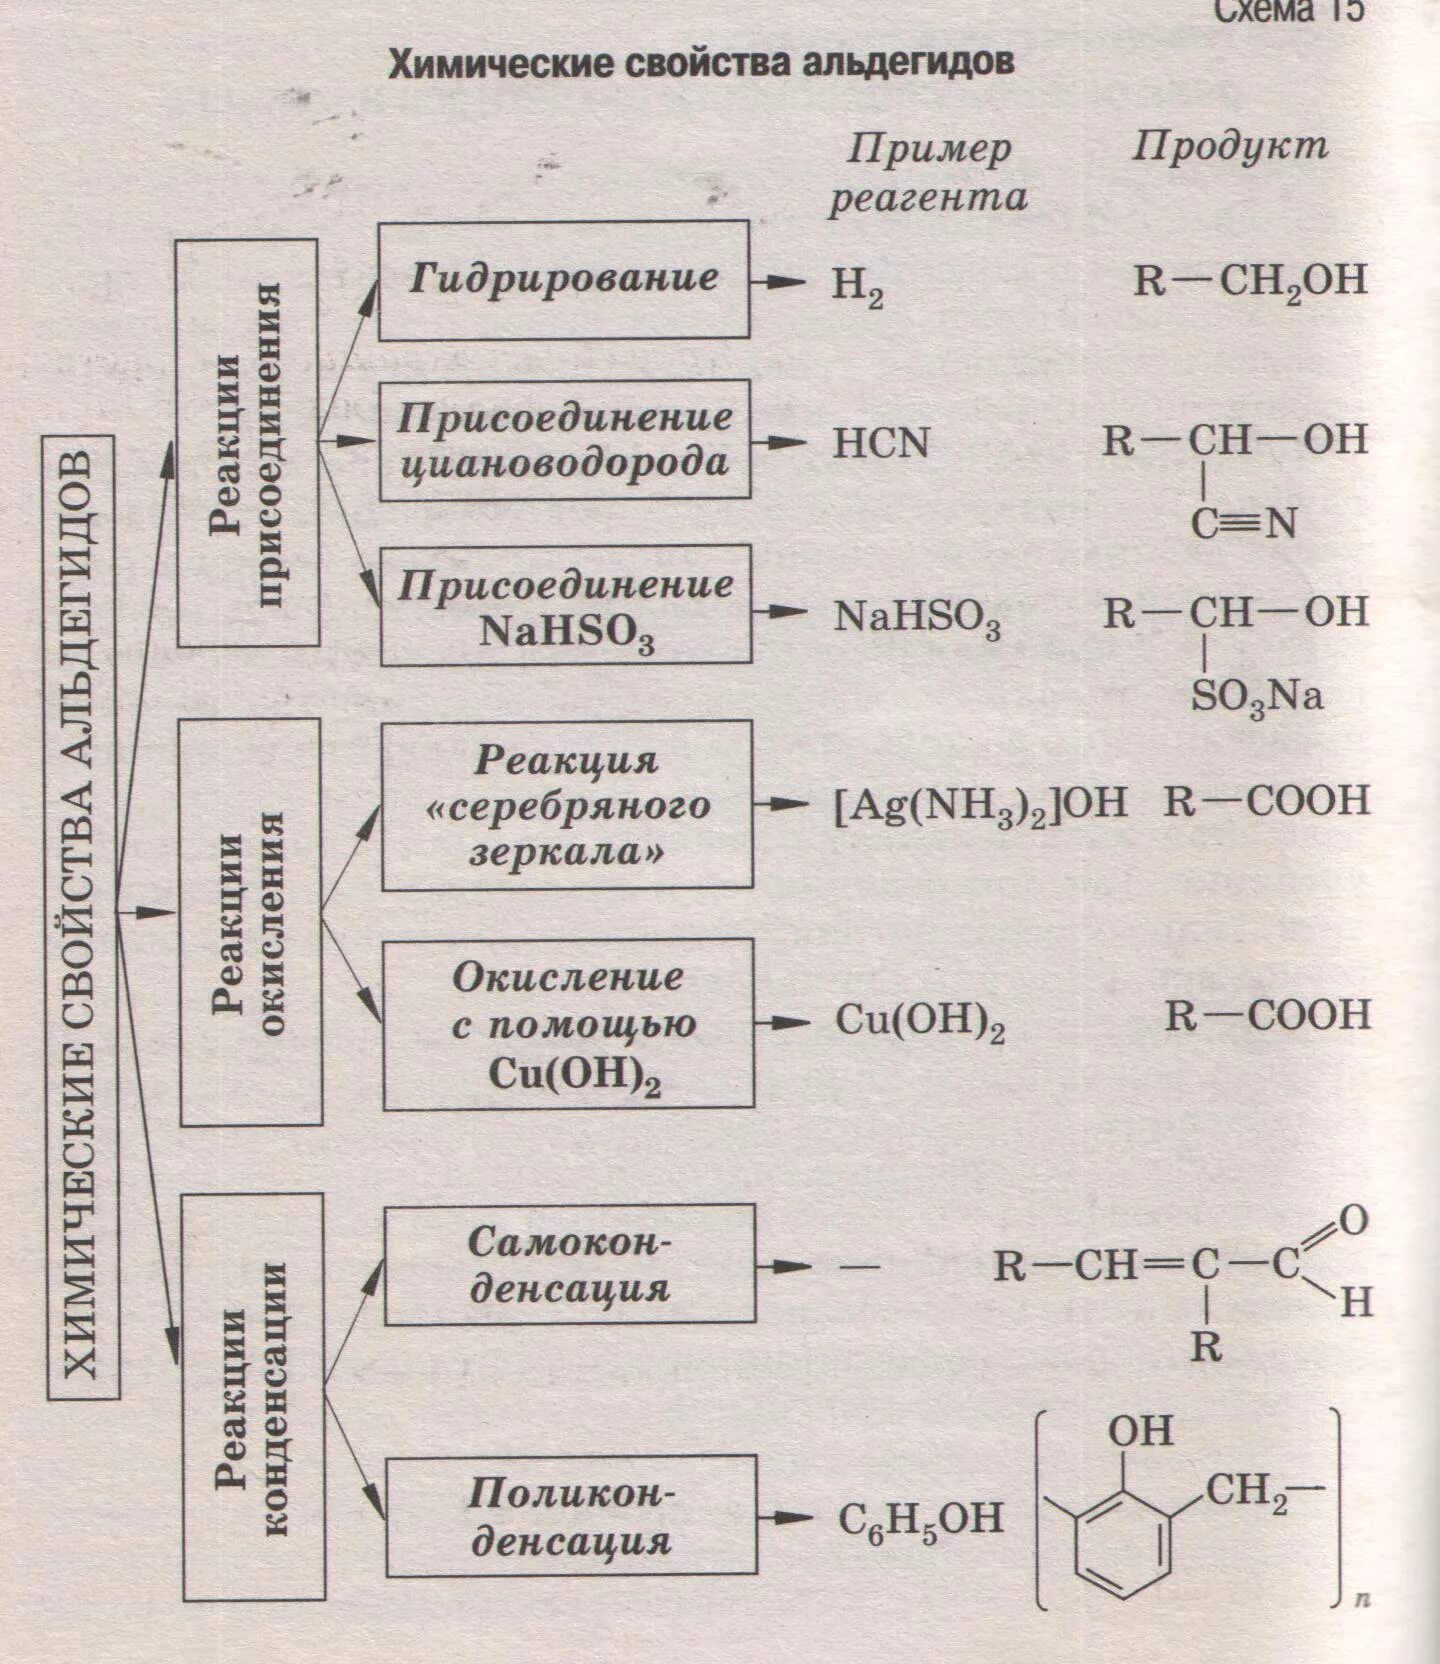 Химические свойства альдегидов 10 класс химия. Химические свойства альдегидов и кетонов таблица. Альдегиды и кетоны химические свойства 10 класс. Химические свойства альдегидов 10 класс. Характерные реакции кетонов